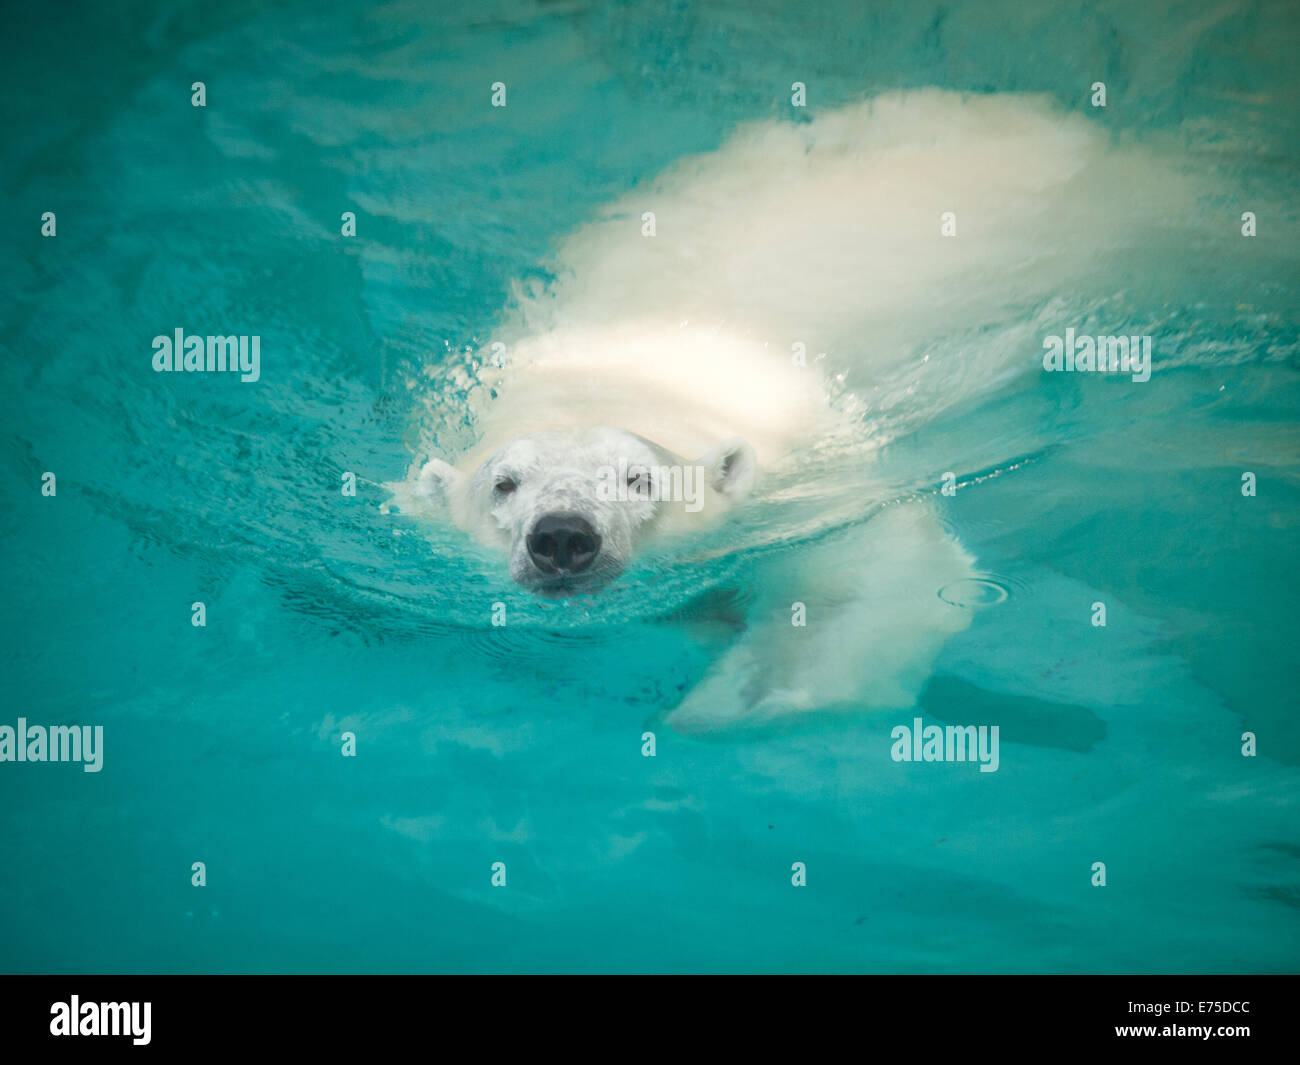 Anana, il resident femmina orso polare del Lincoln Park Zoo di Chicago, nuotate nella piscina di lei in un caldo giorno d'estate. Foto Stock